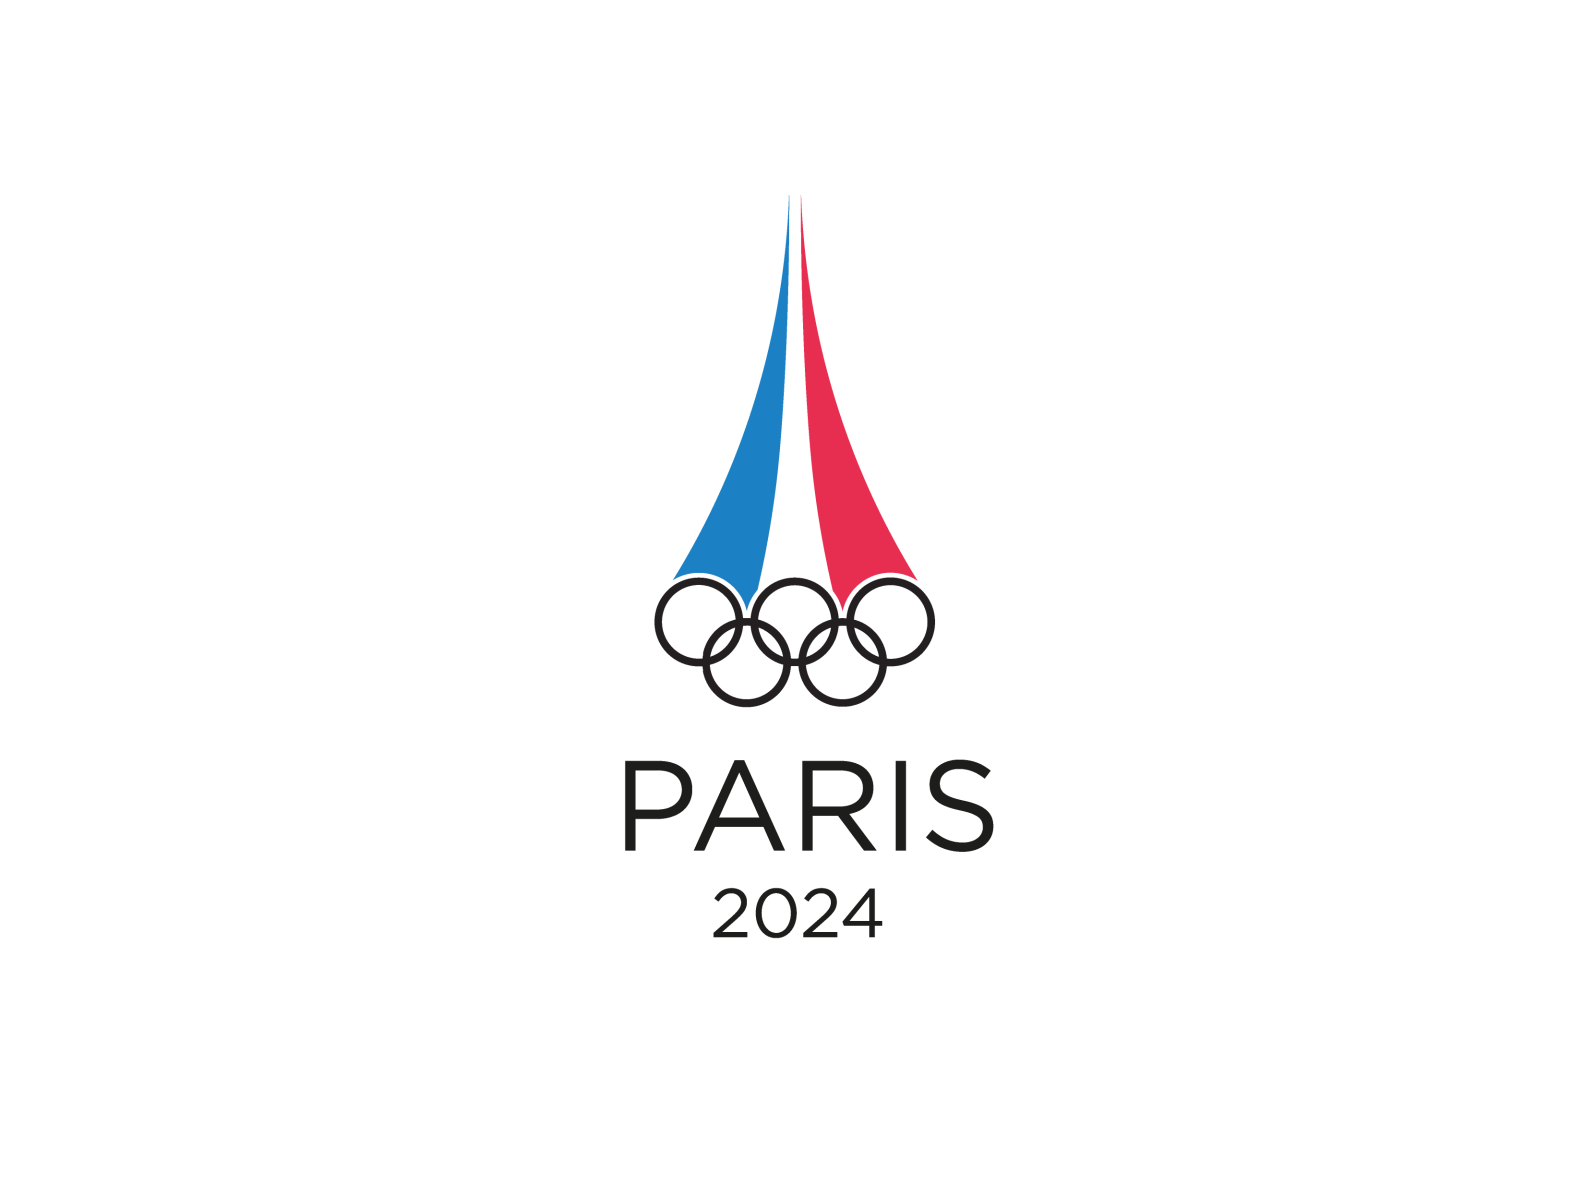 Прэфжс 2024. Олимпийские игры в Париже 2024. Paris 2024 логотип. Paris 2024 Olympics logo.